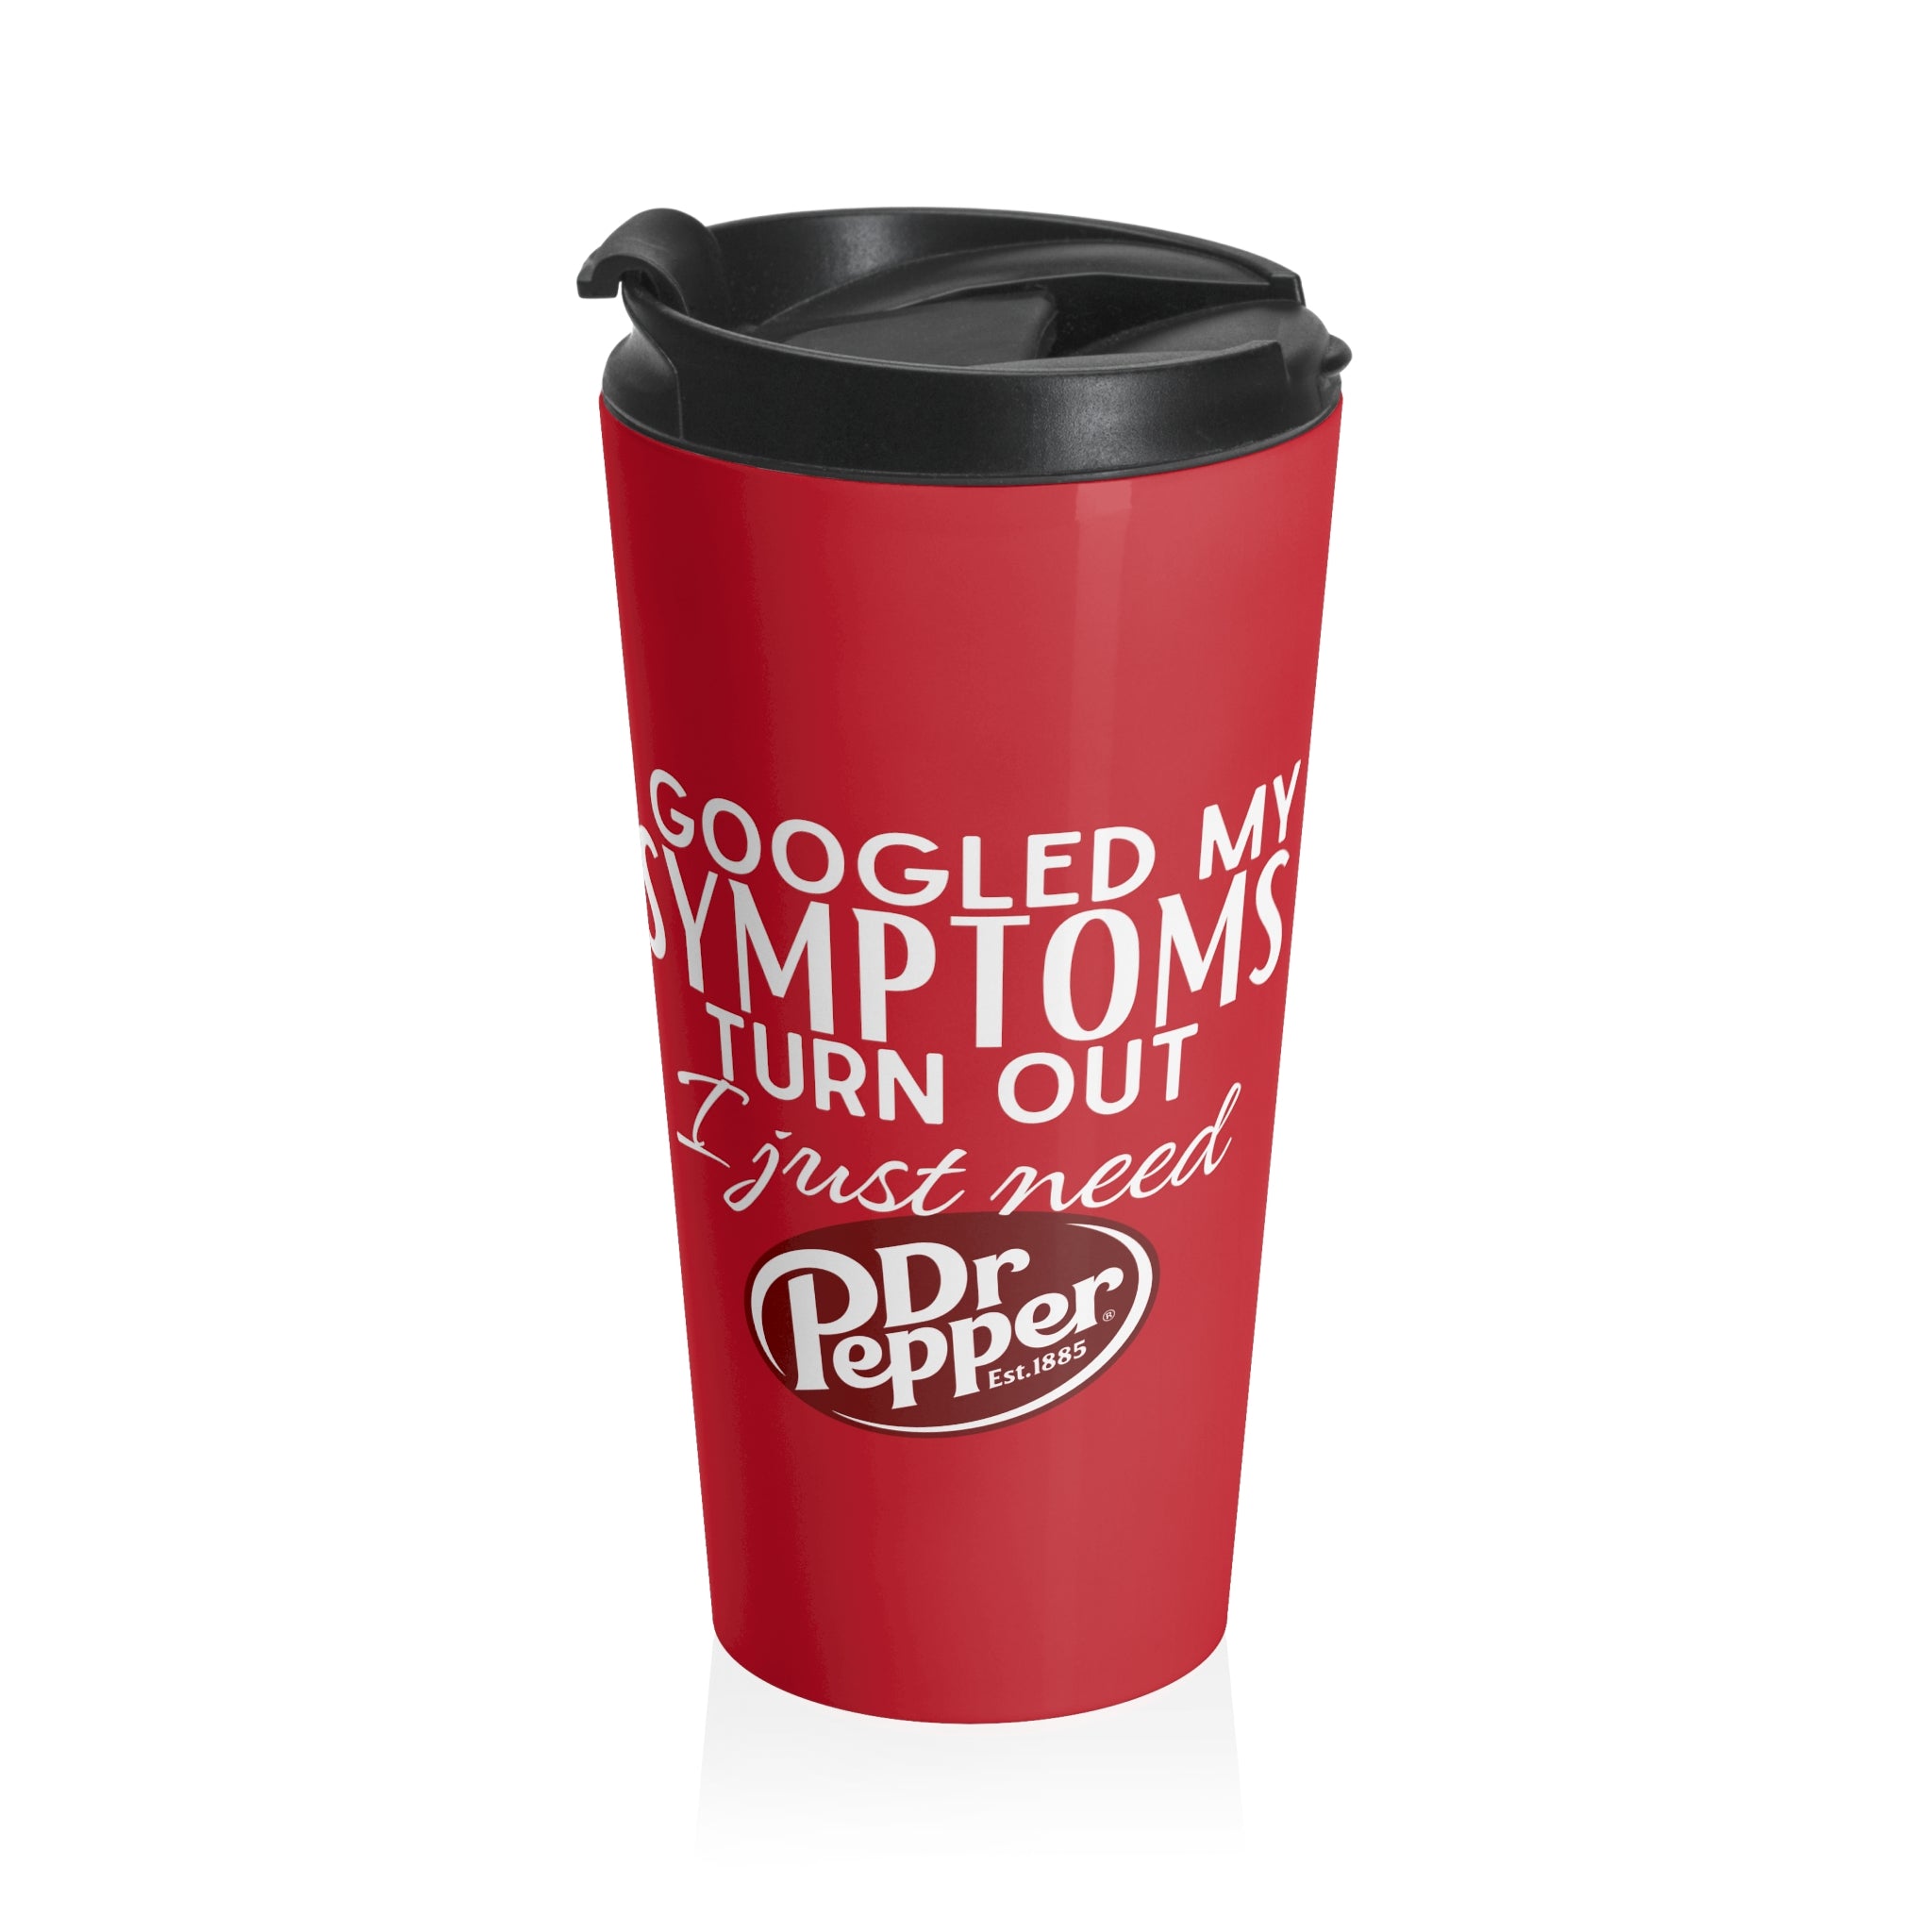 Googled symptoms Dr Pepper Stainless Steel Travel Mug